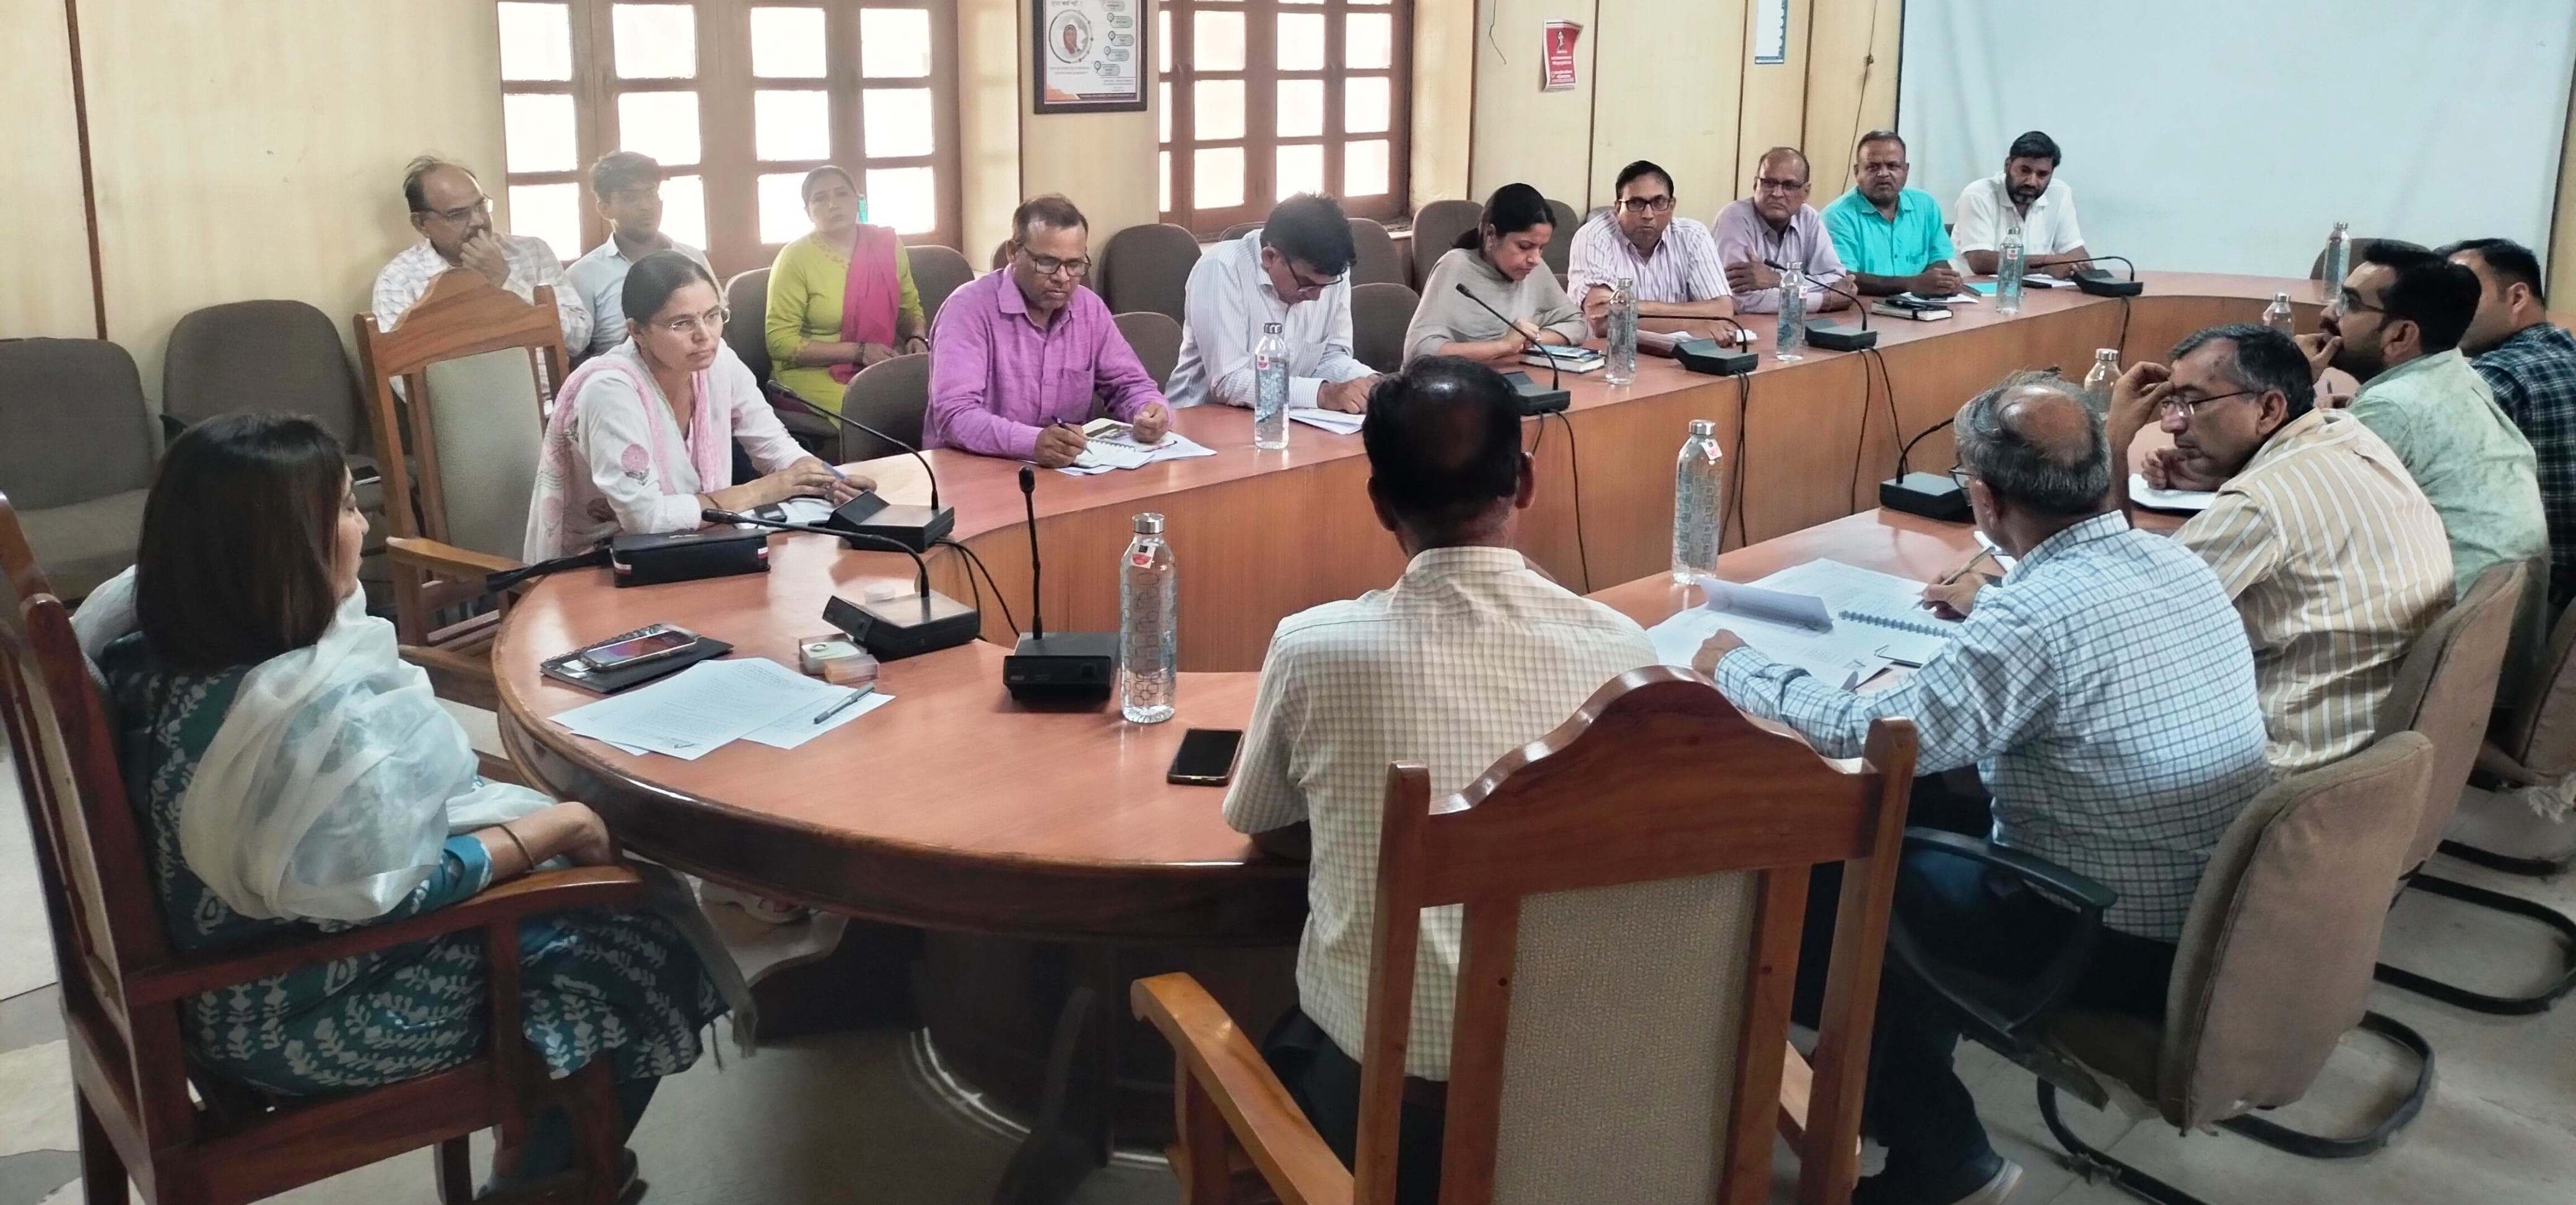 जिला कलक्टर पुष्पा सत्यानी ने मानसून के दौरान वृक्षारोपण अभियान को लेकर आयोजित बैठक में दिए निर्देश, कहा- सभी विभागों के समन्वय से हो बेहतरीन प्रयास